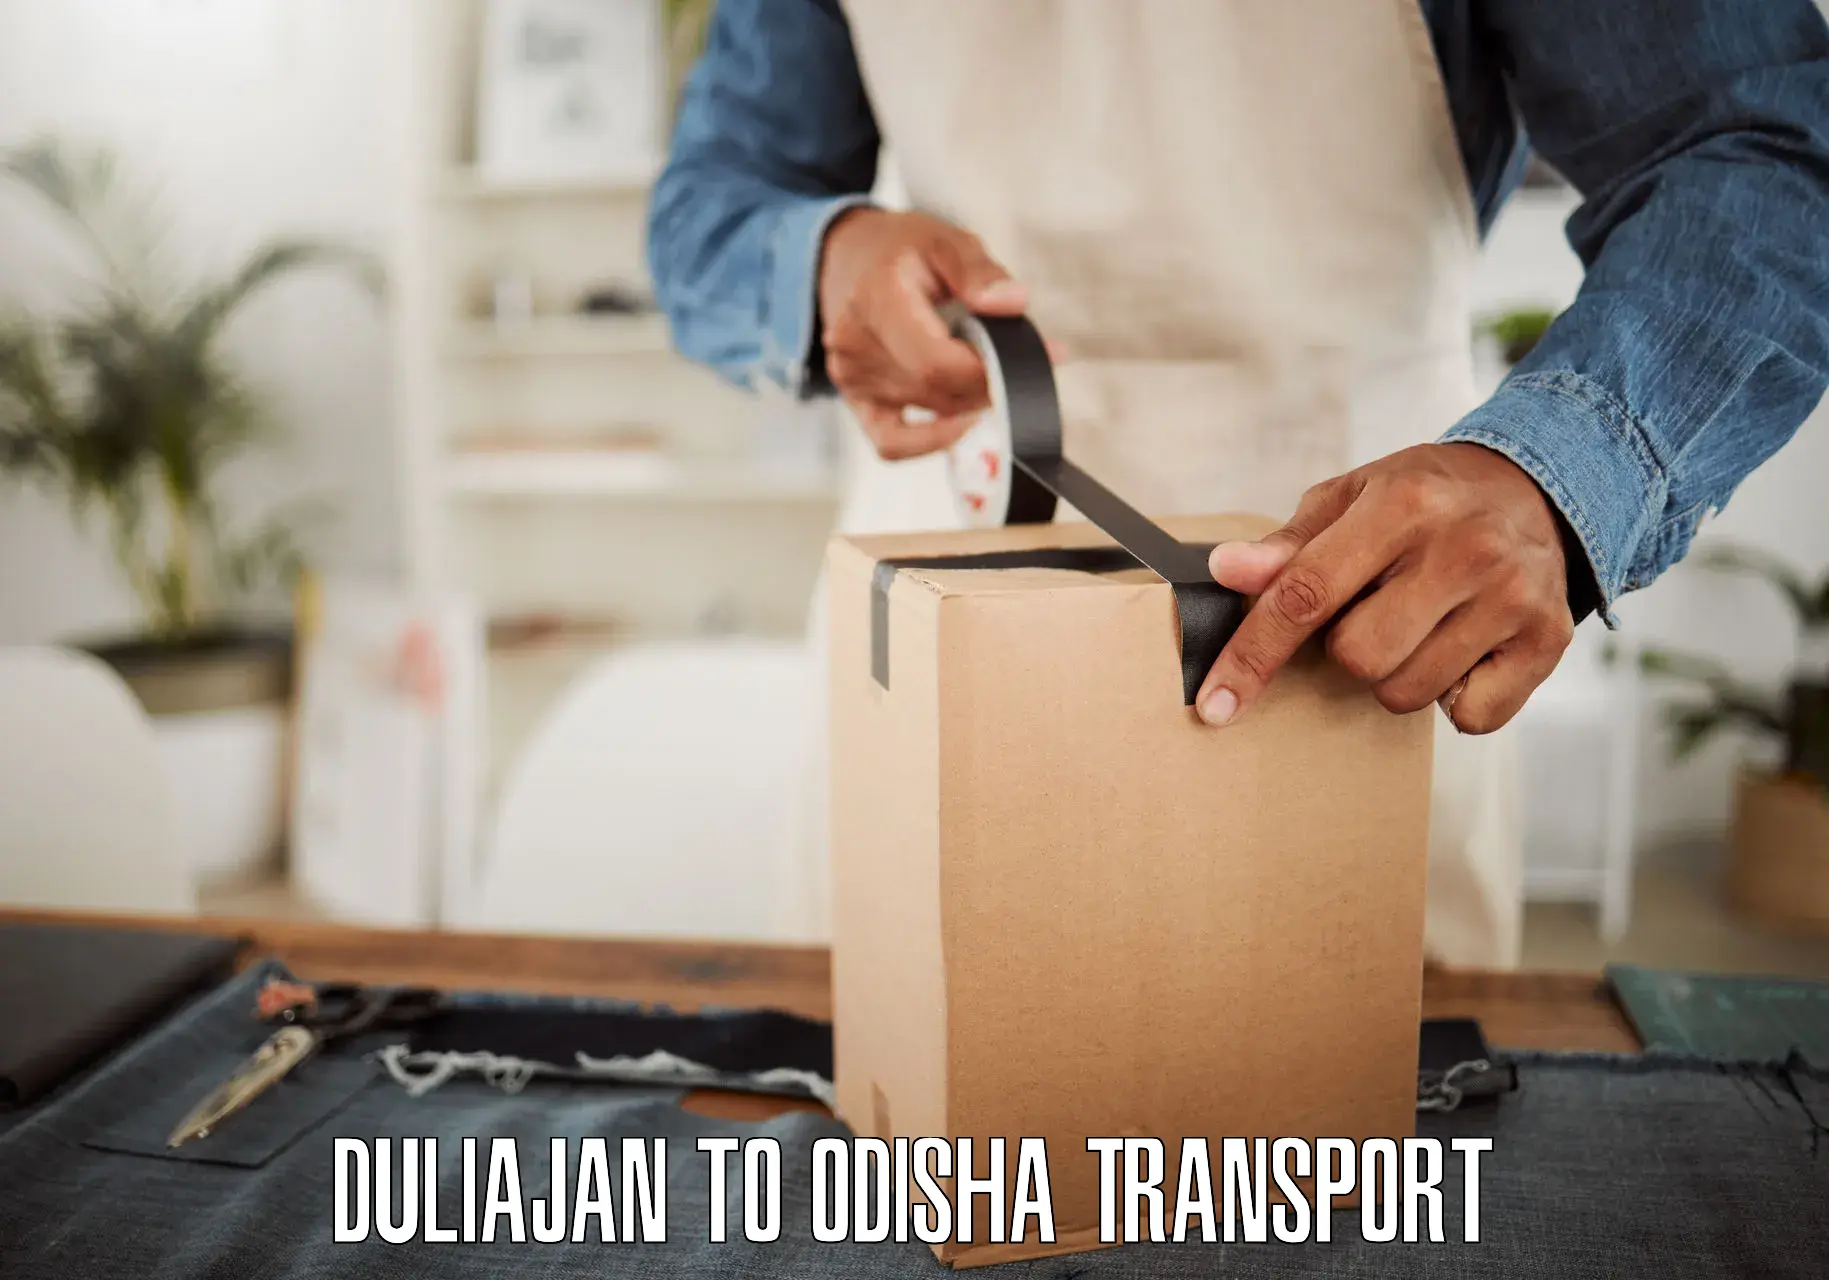 Express transport services Duliajan to Kalahandi